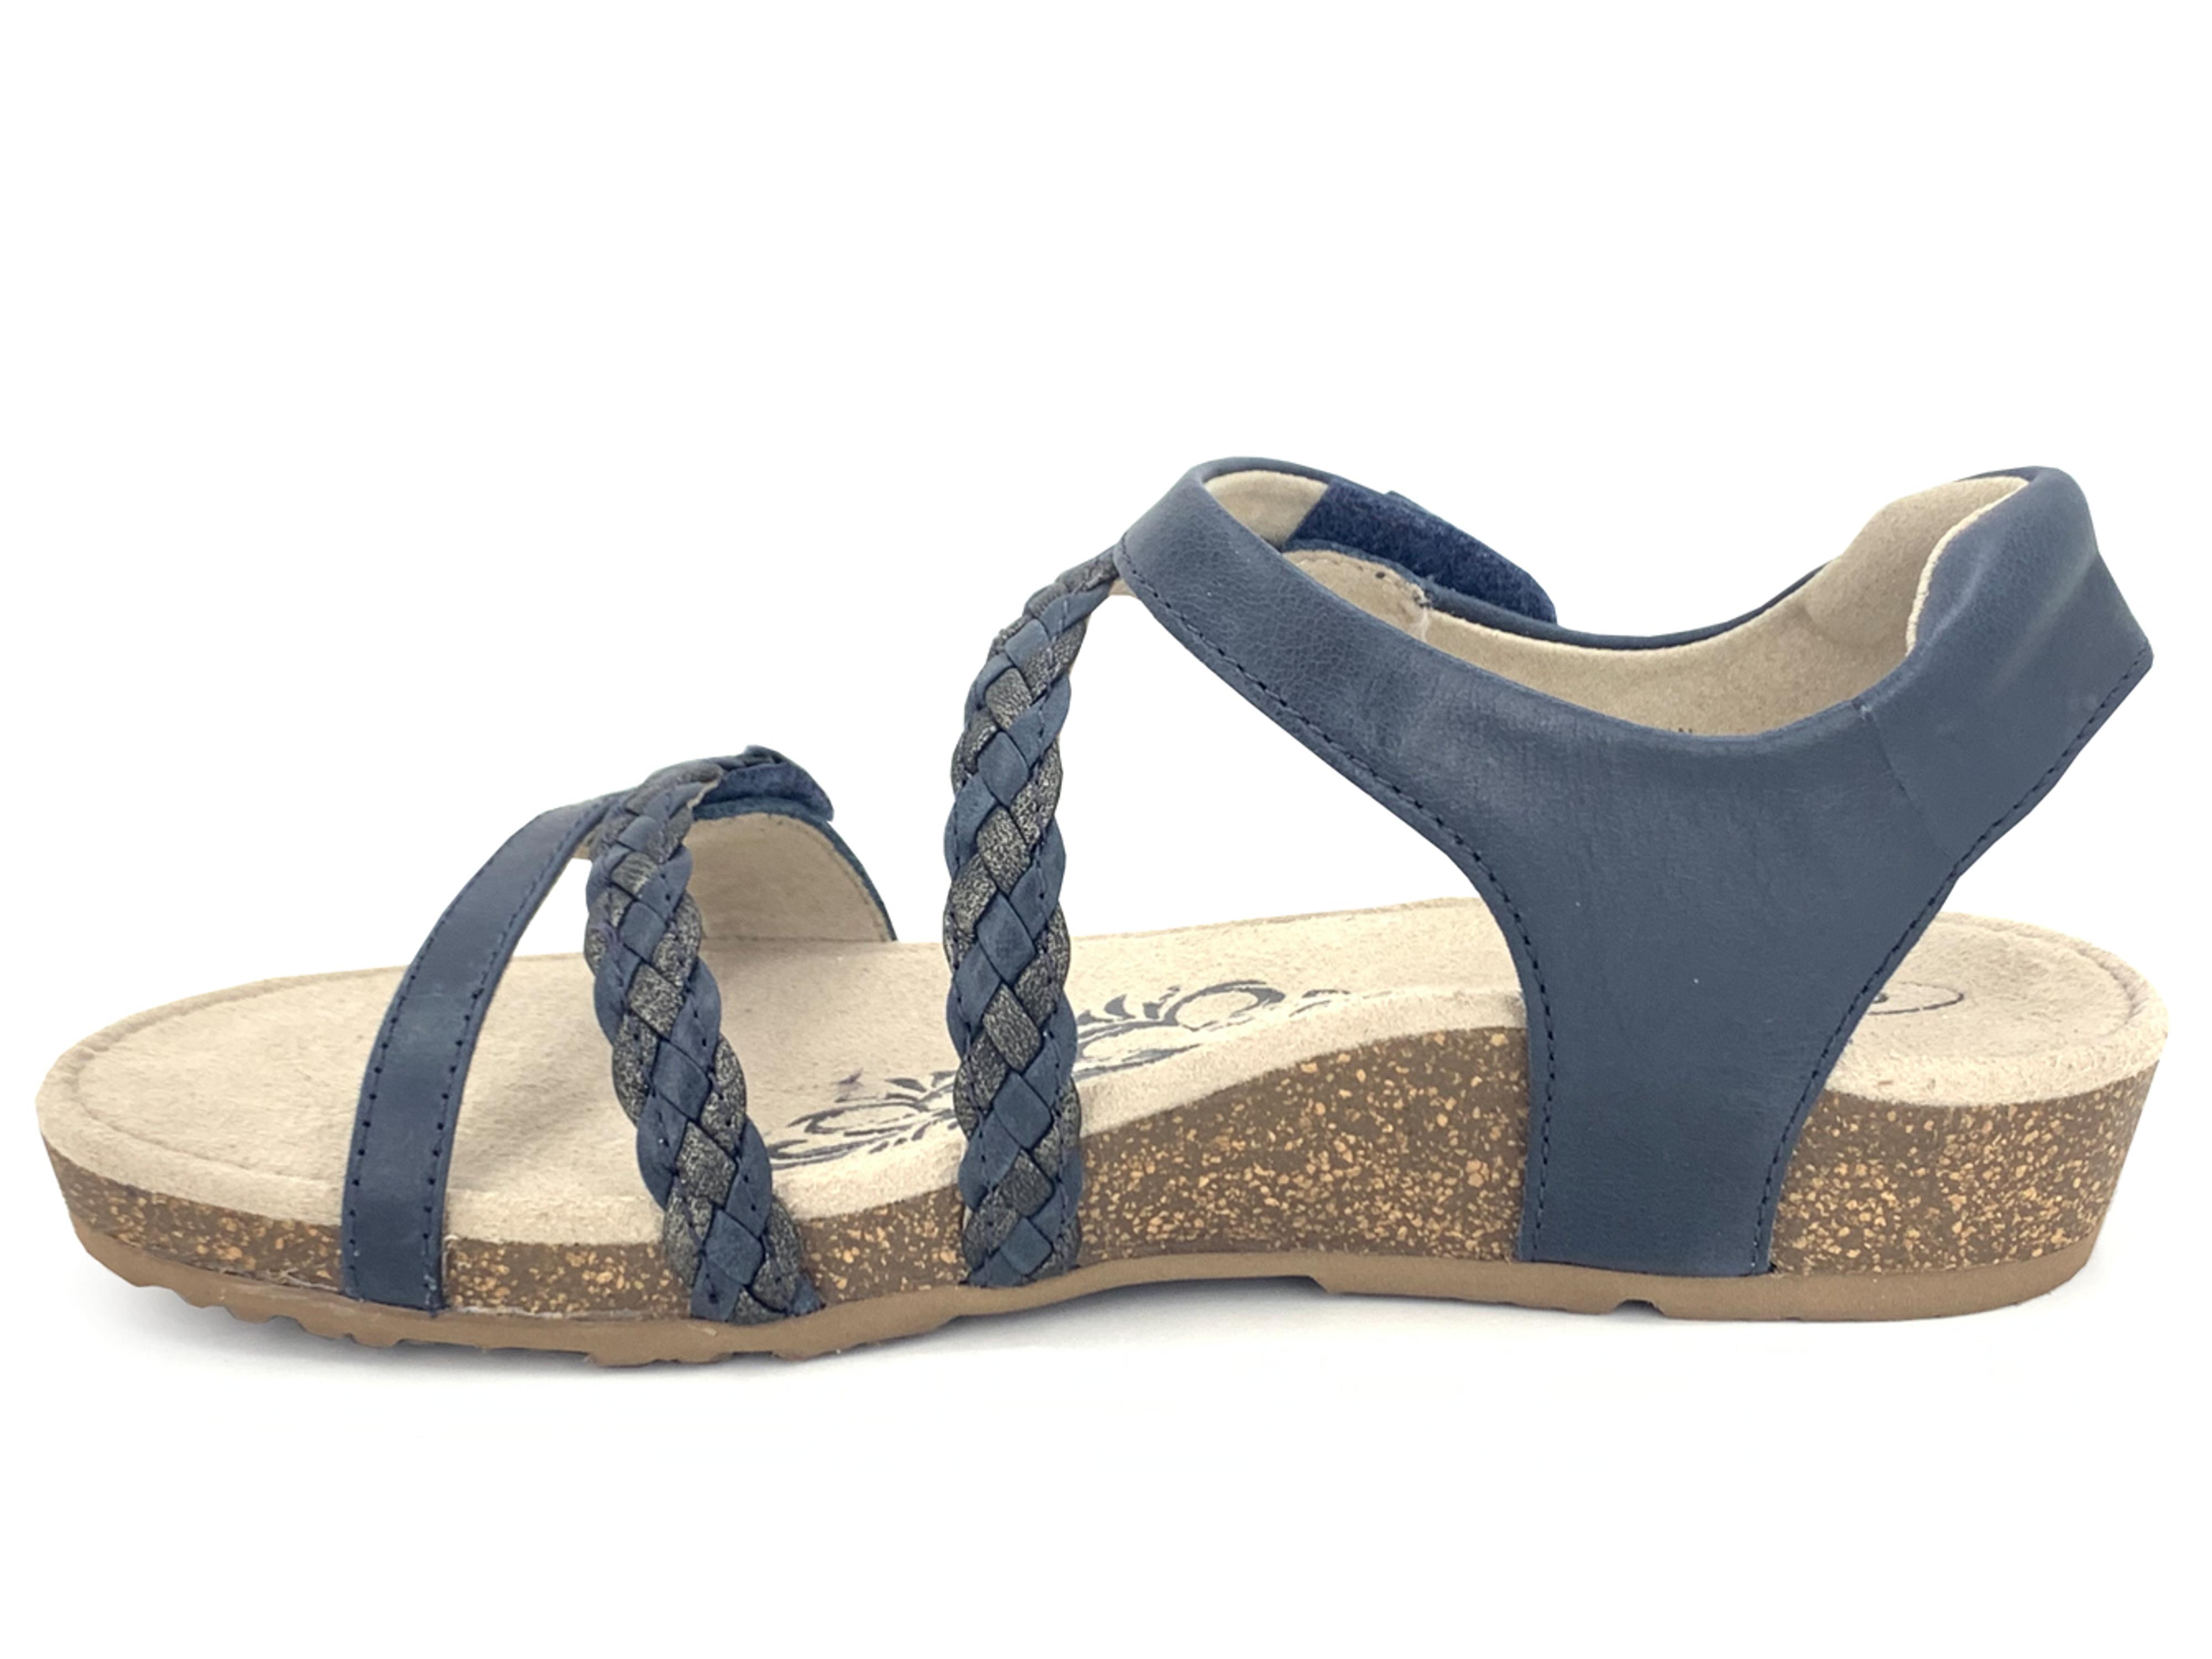 Aetrex Jillian Quarter Strap Sandal Navy : The Shoe Spa